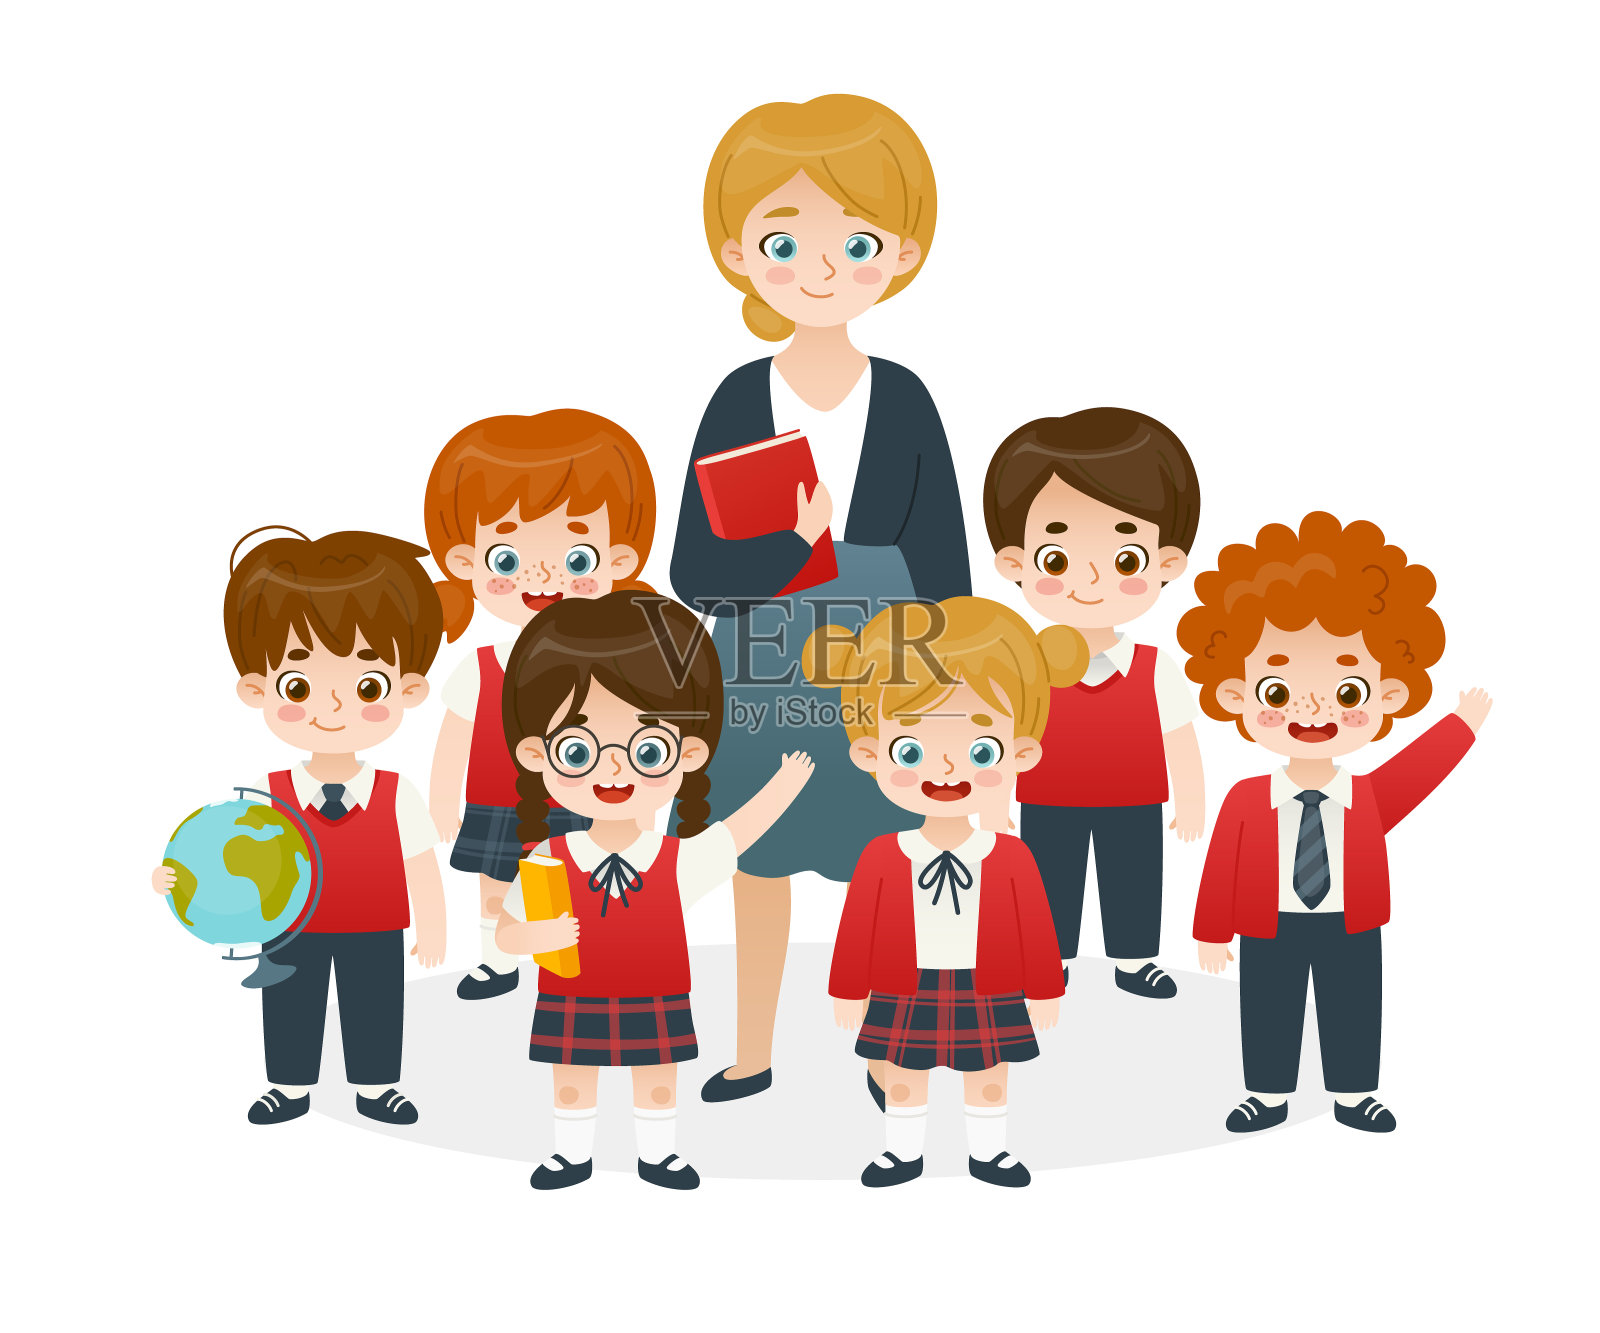 穿着校服的学生和老师站在一起。卡通小学生群体多样化。穿着校服的可爱同学。插画图片素材